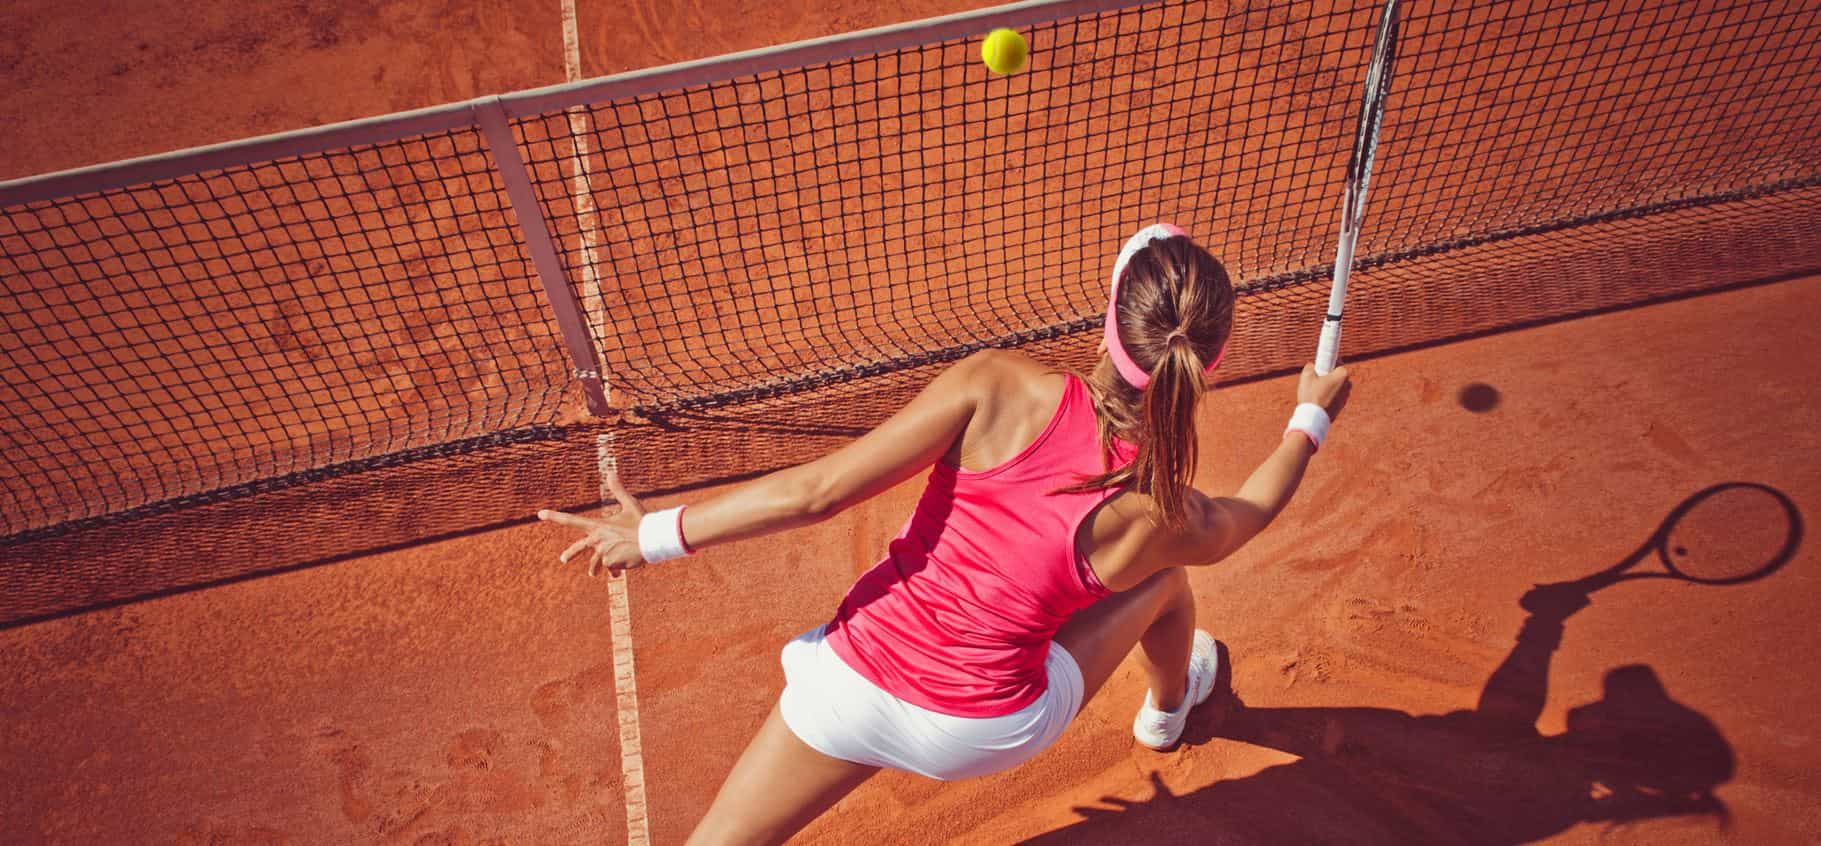 Outlet Tenis con ofertas hasta -75%* | Privé Zalando